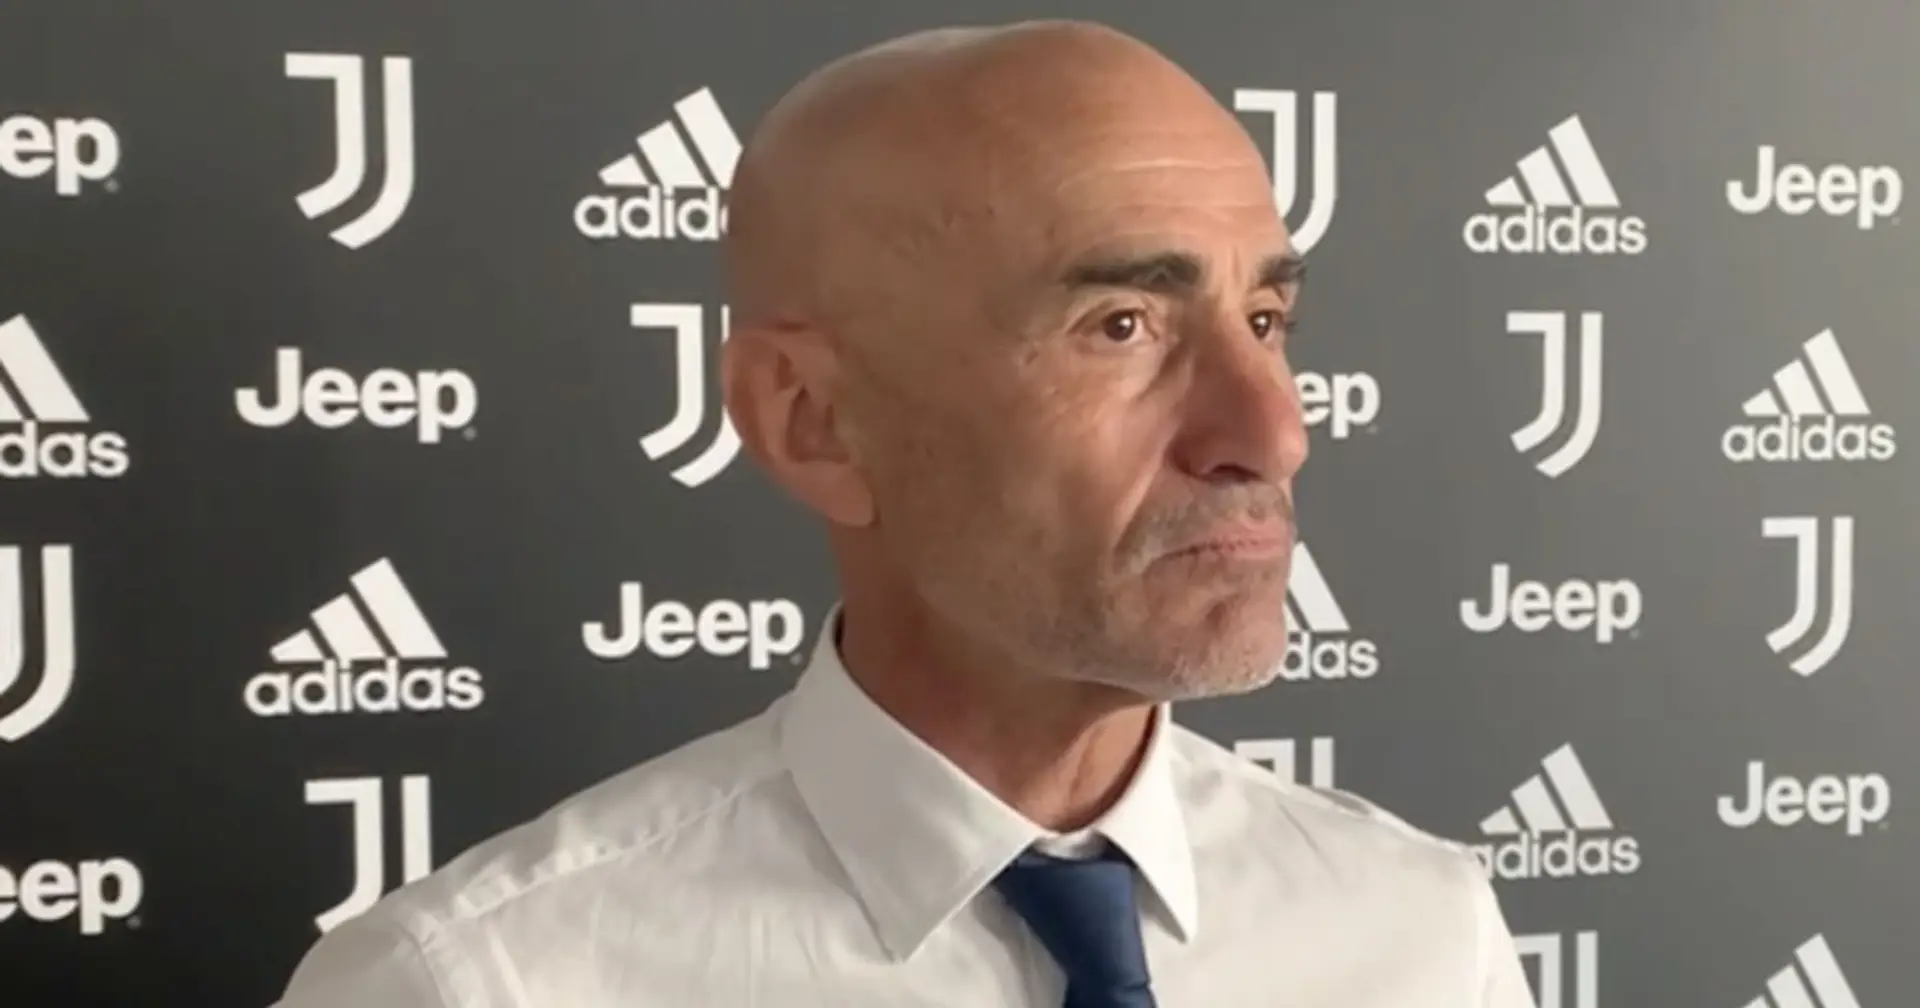 Paolo Montero scala le gerarchie alla Juventus: nuovo ruolo per l'attuale tecnico della Primavera